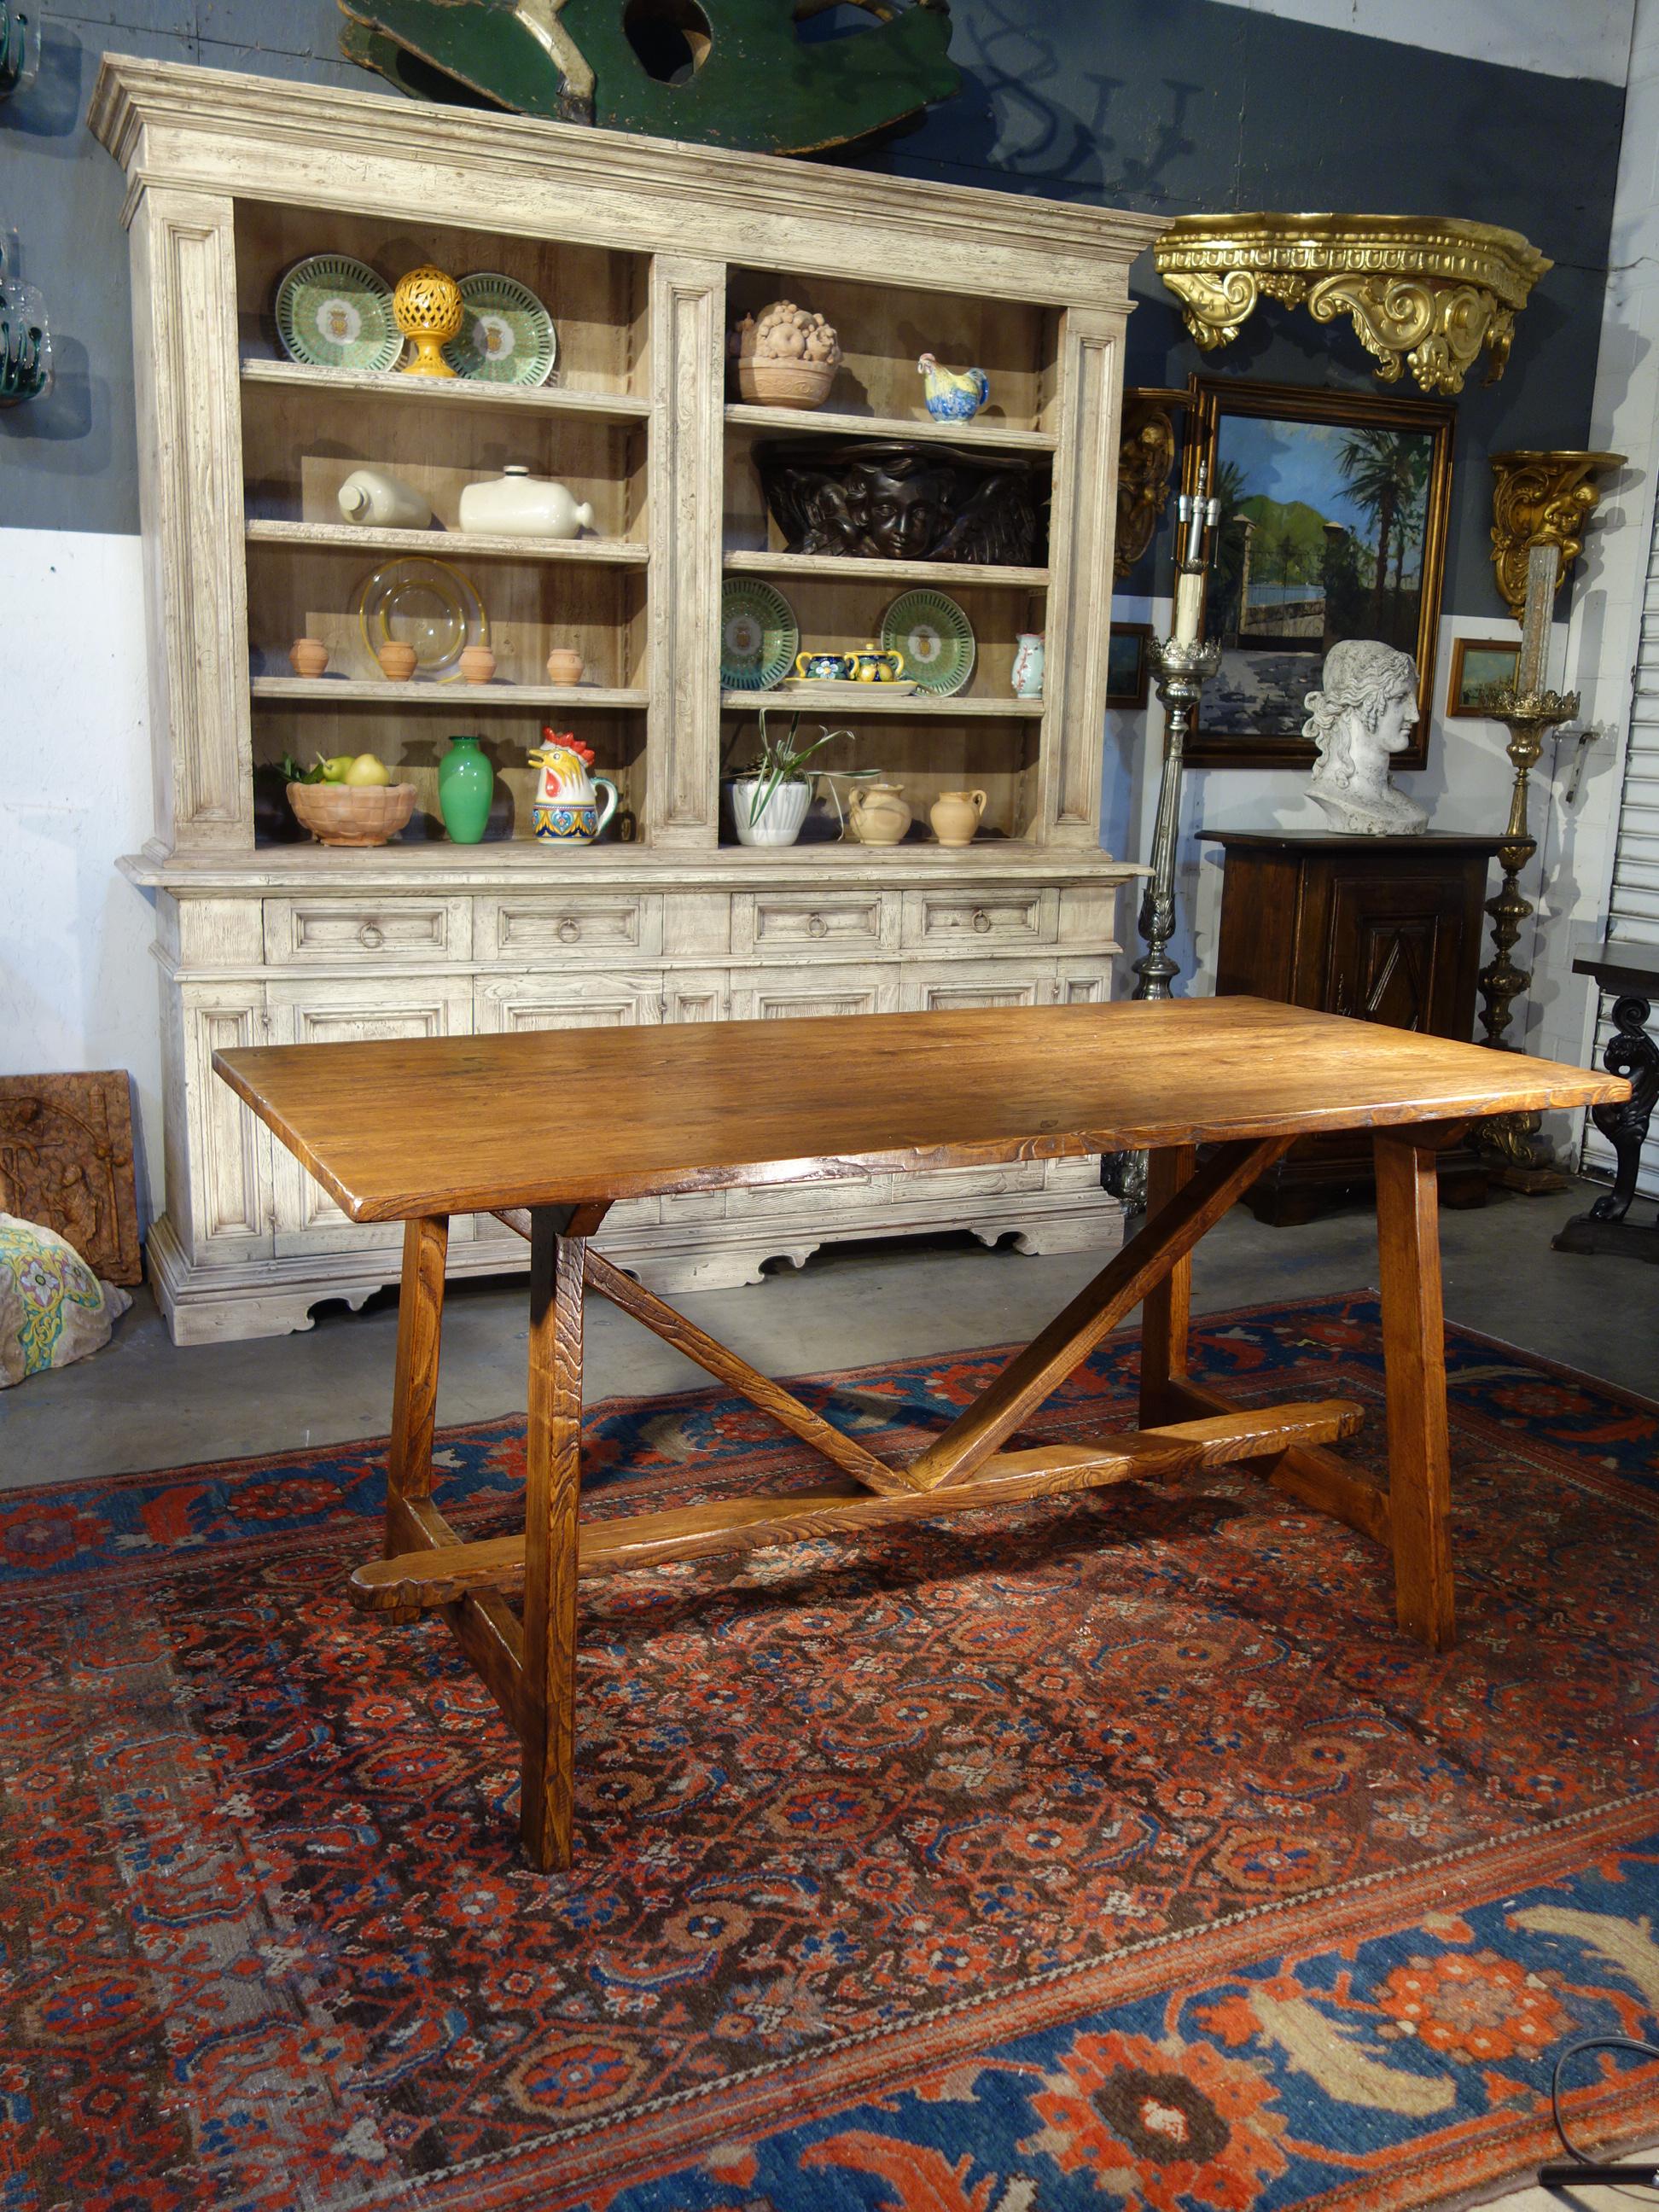 Ligne de tables CAPRETTA - notre table rustique de style réfectoire italien du 17e siècle, fabriquée à la main en vieux châtaignier avec une surface brossée pour accentuer le grain et une teinture Renaissance classique à la gomme-laque - disponible